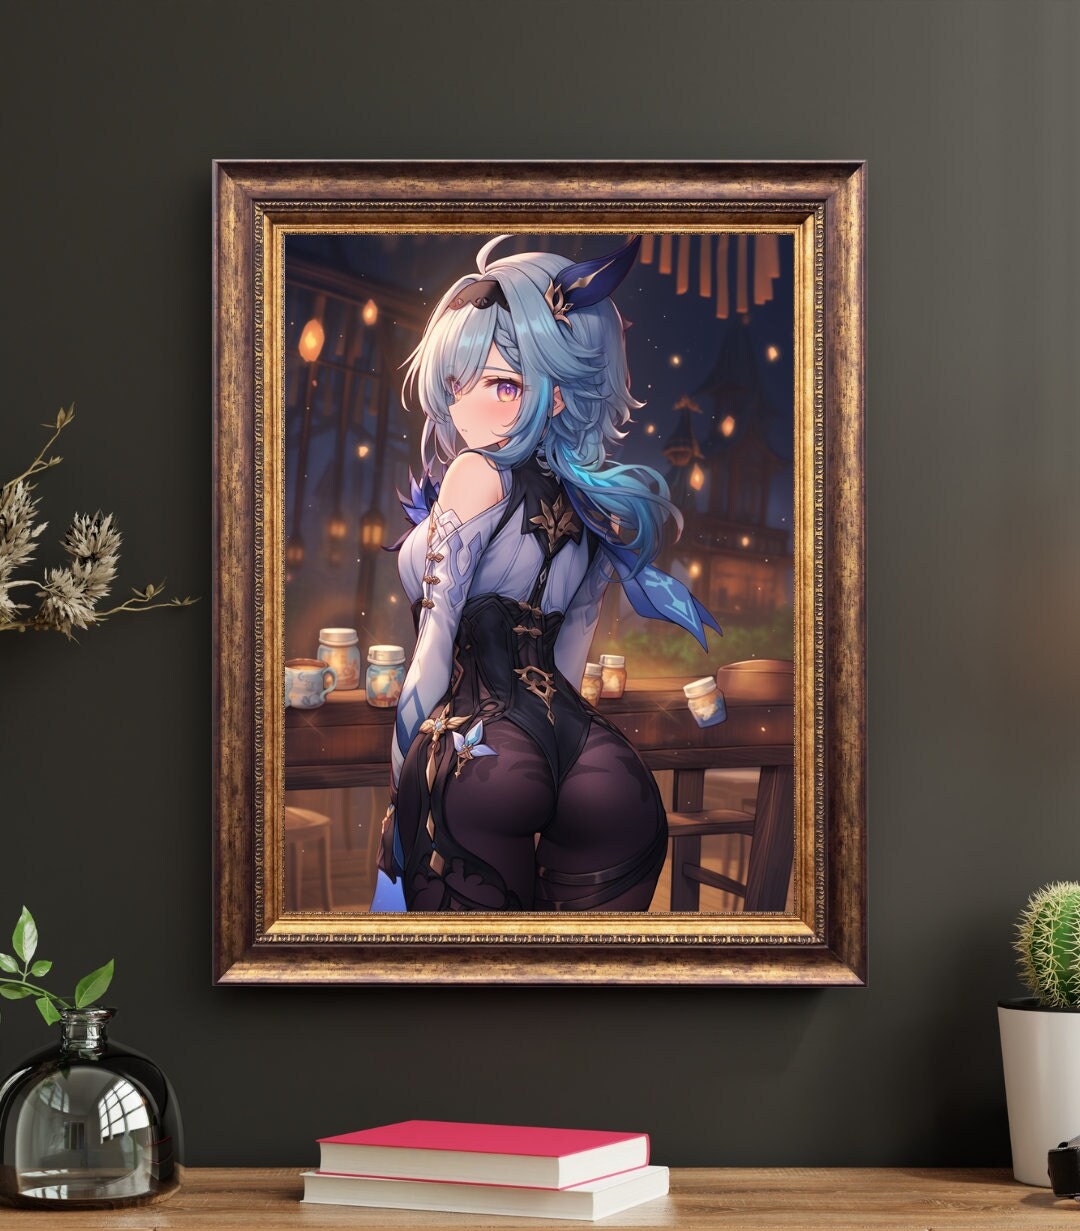 Elegant Aqua-Haired Maiden Art Print - Frame Not Included